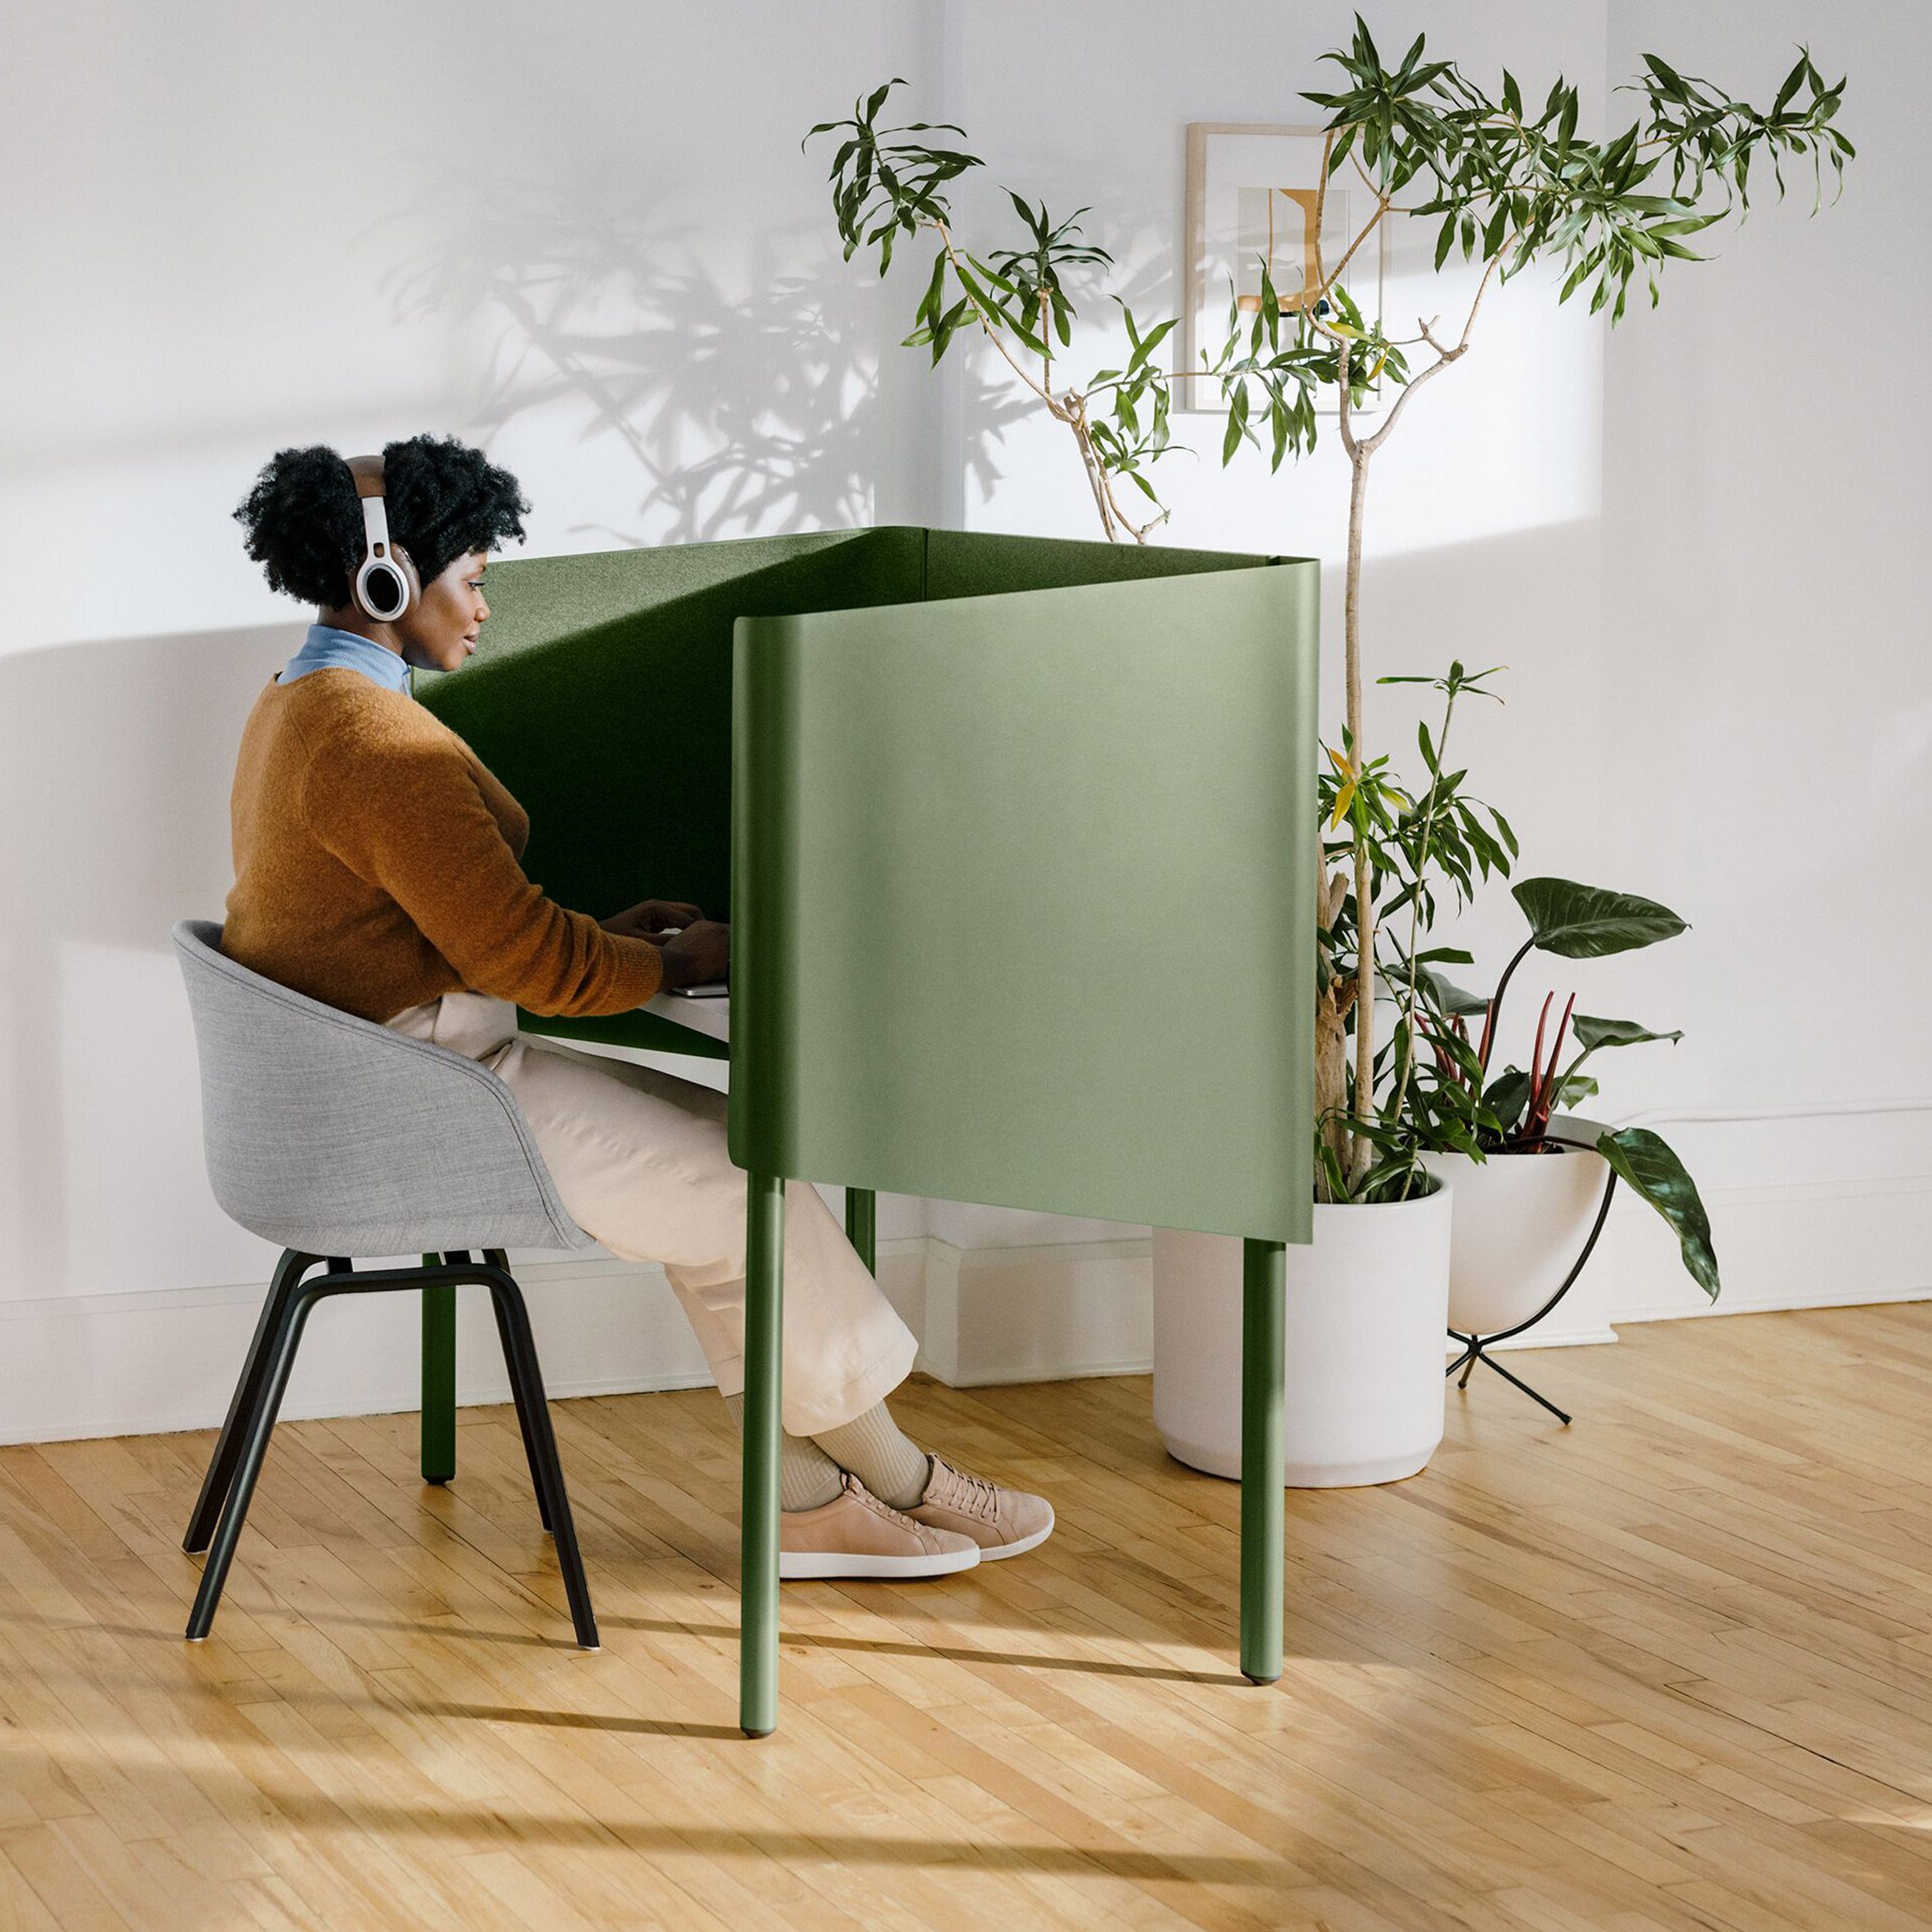 Woman sits at green enclosed desk 